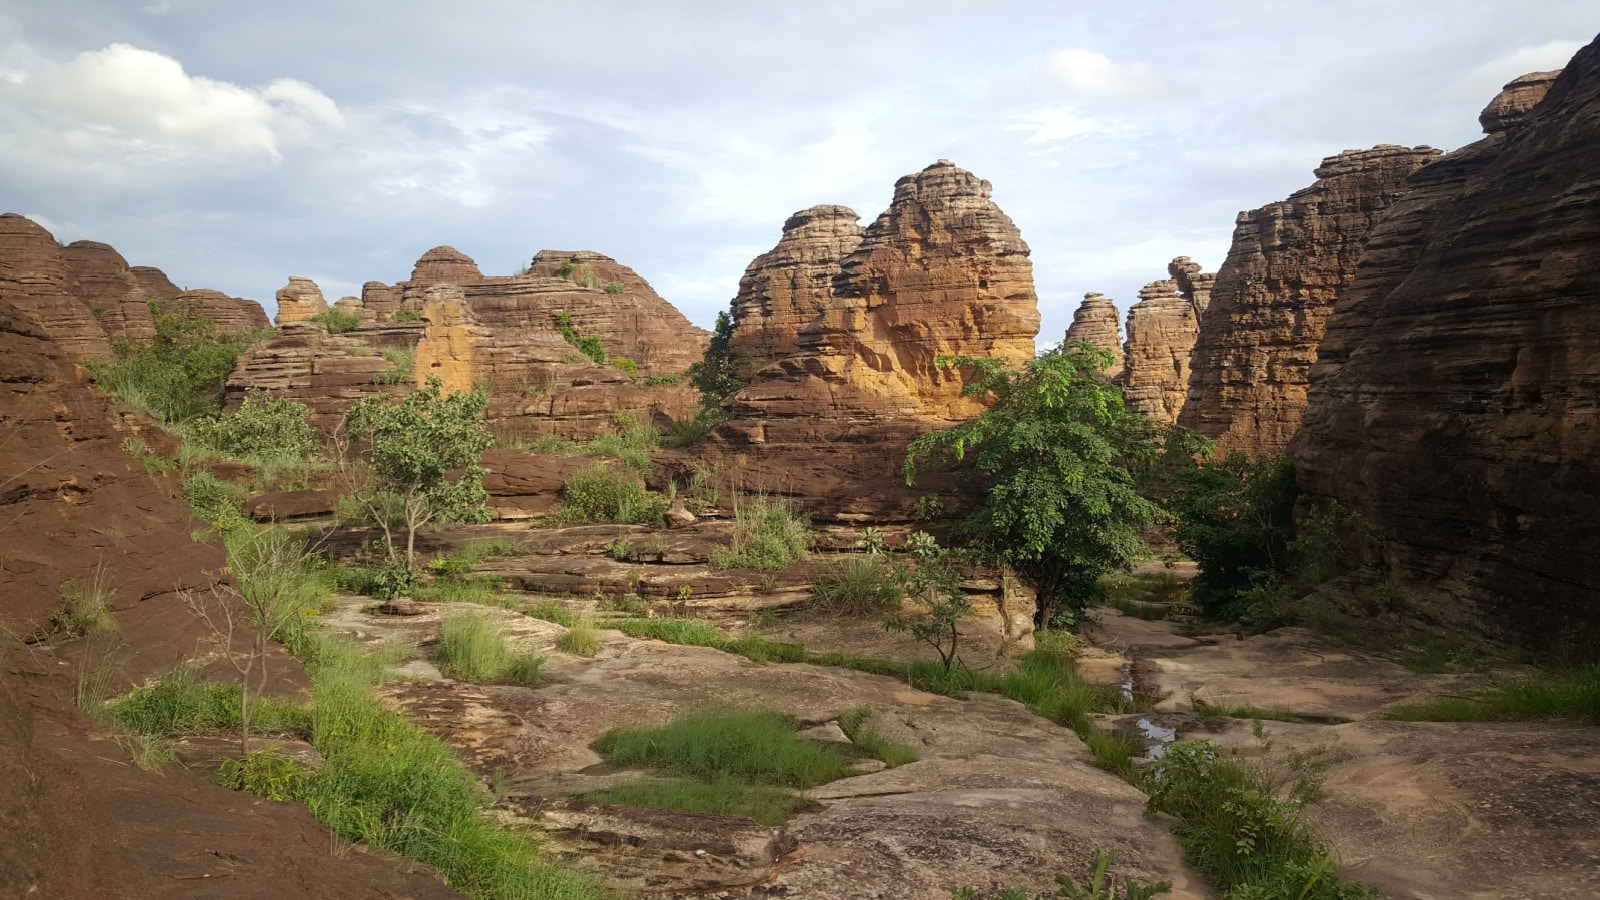 The Sindou peaks in Burkina Faso